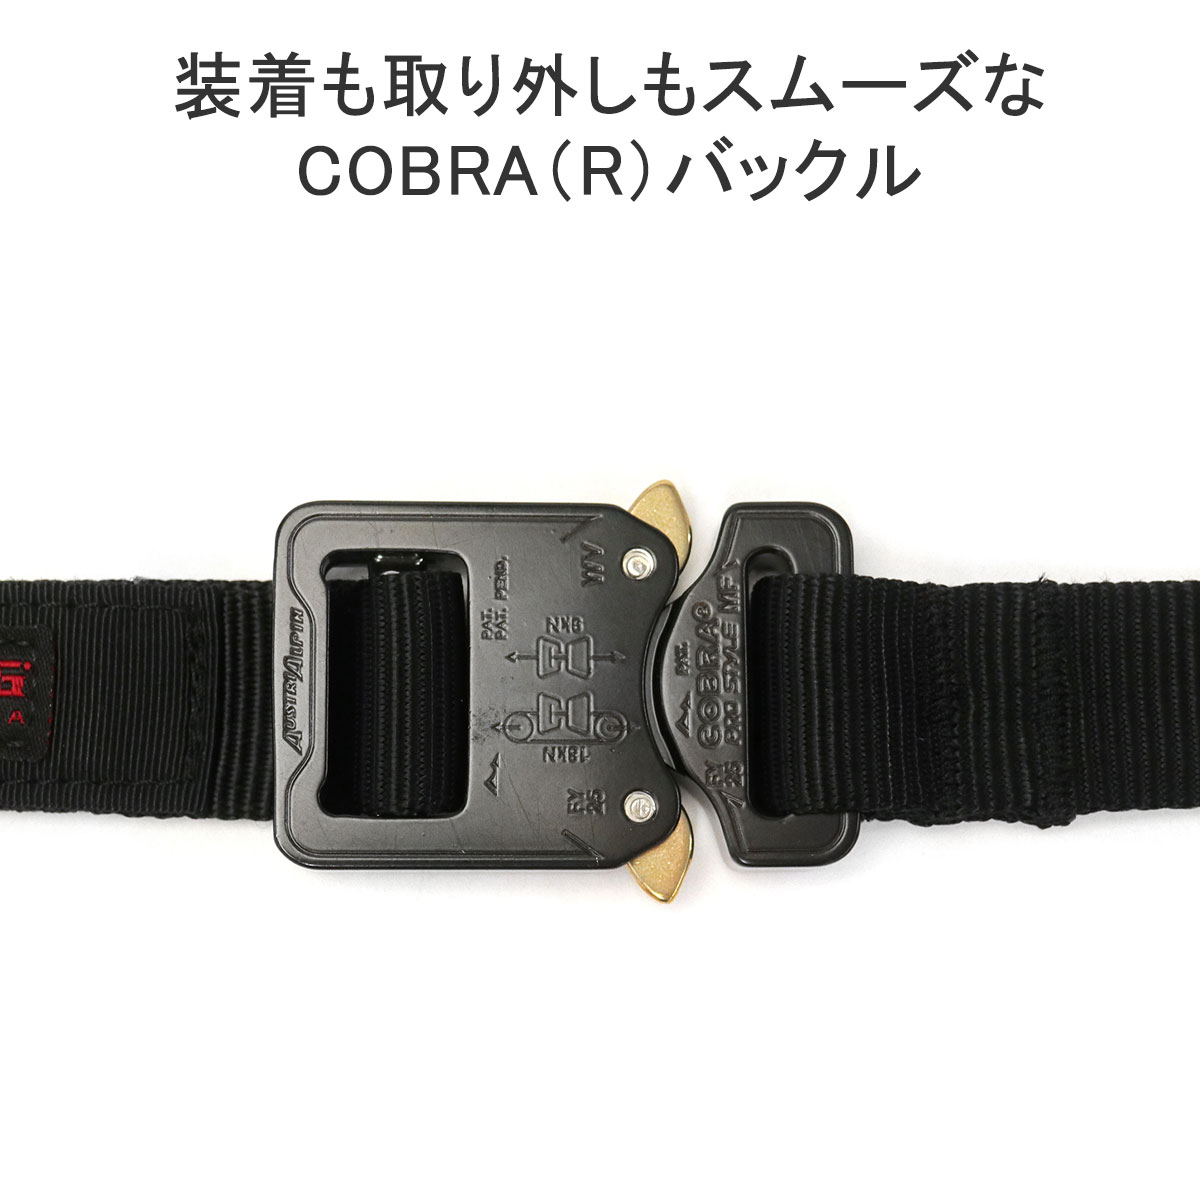 日本正規品 ブリーフィング ベルト BRIEFING COBRA buckle belt MADE